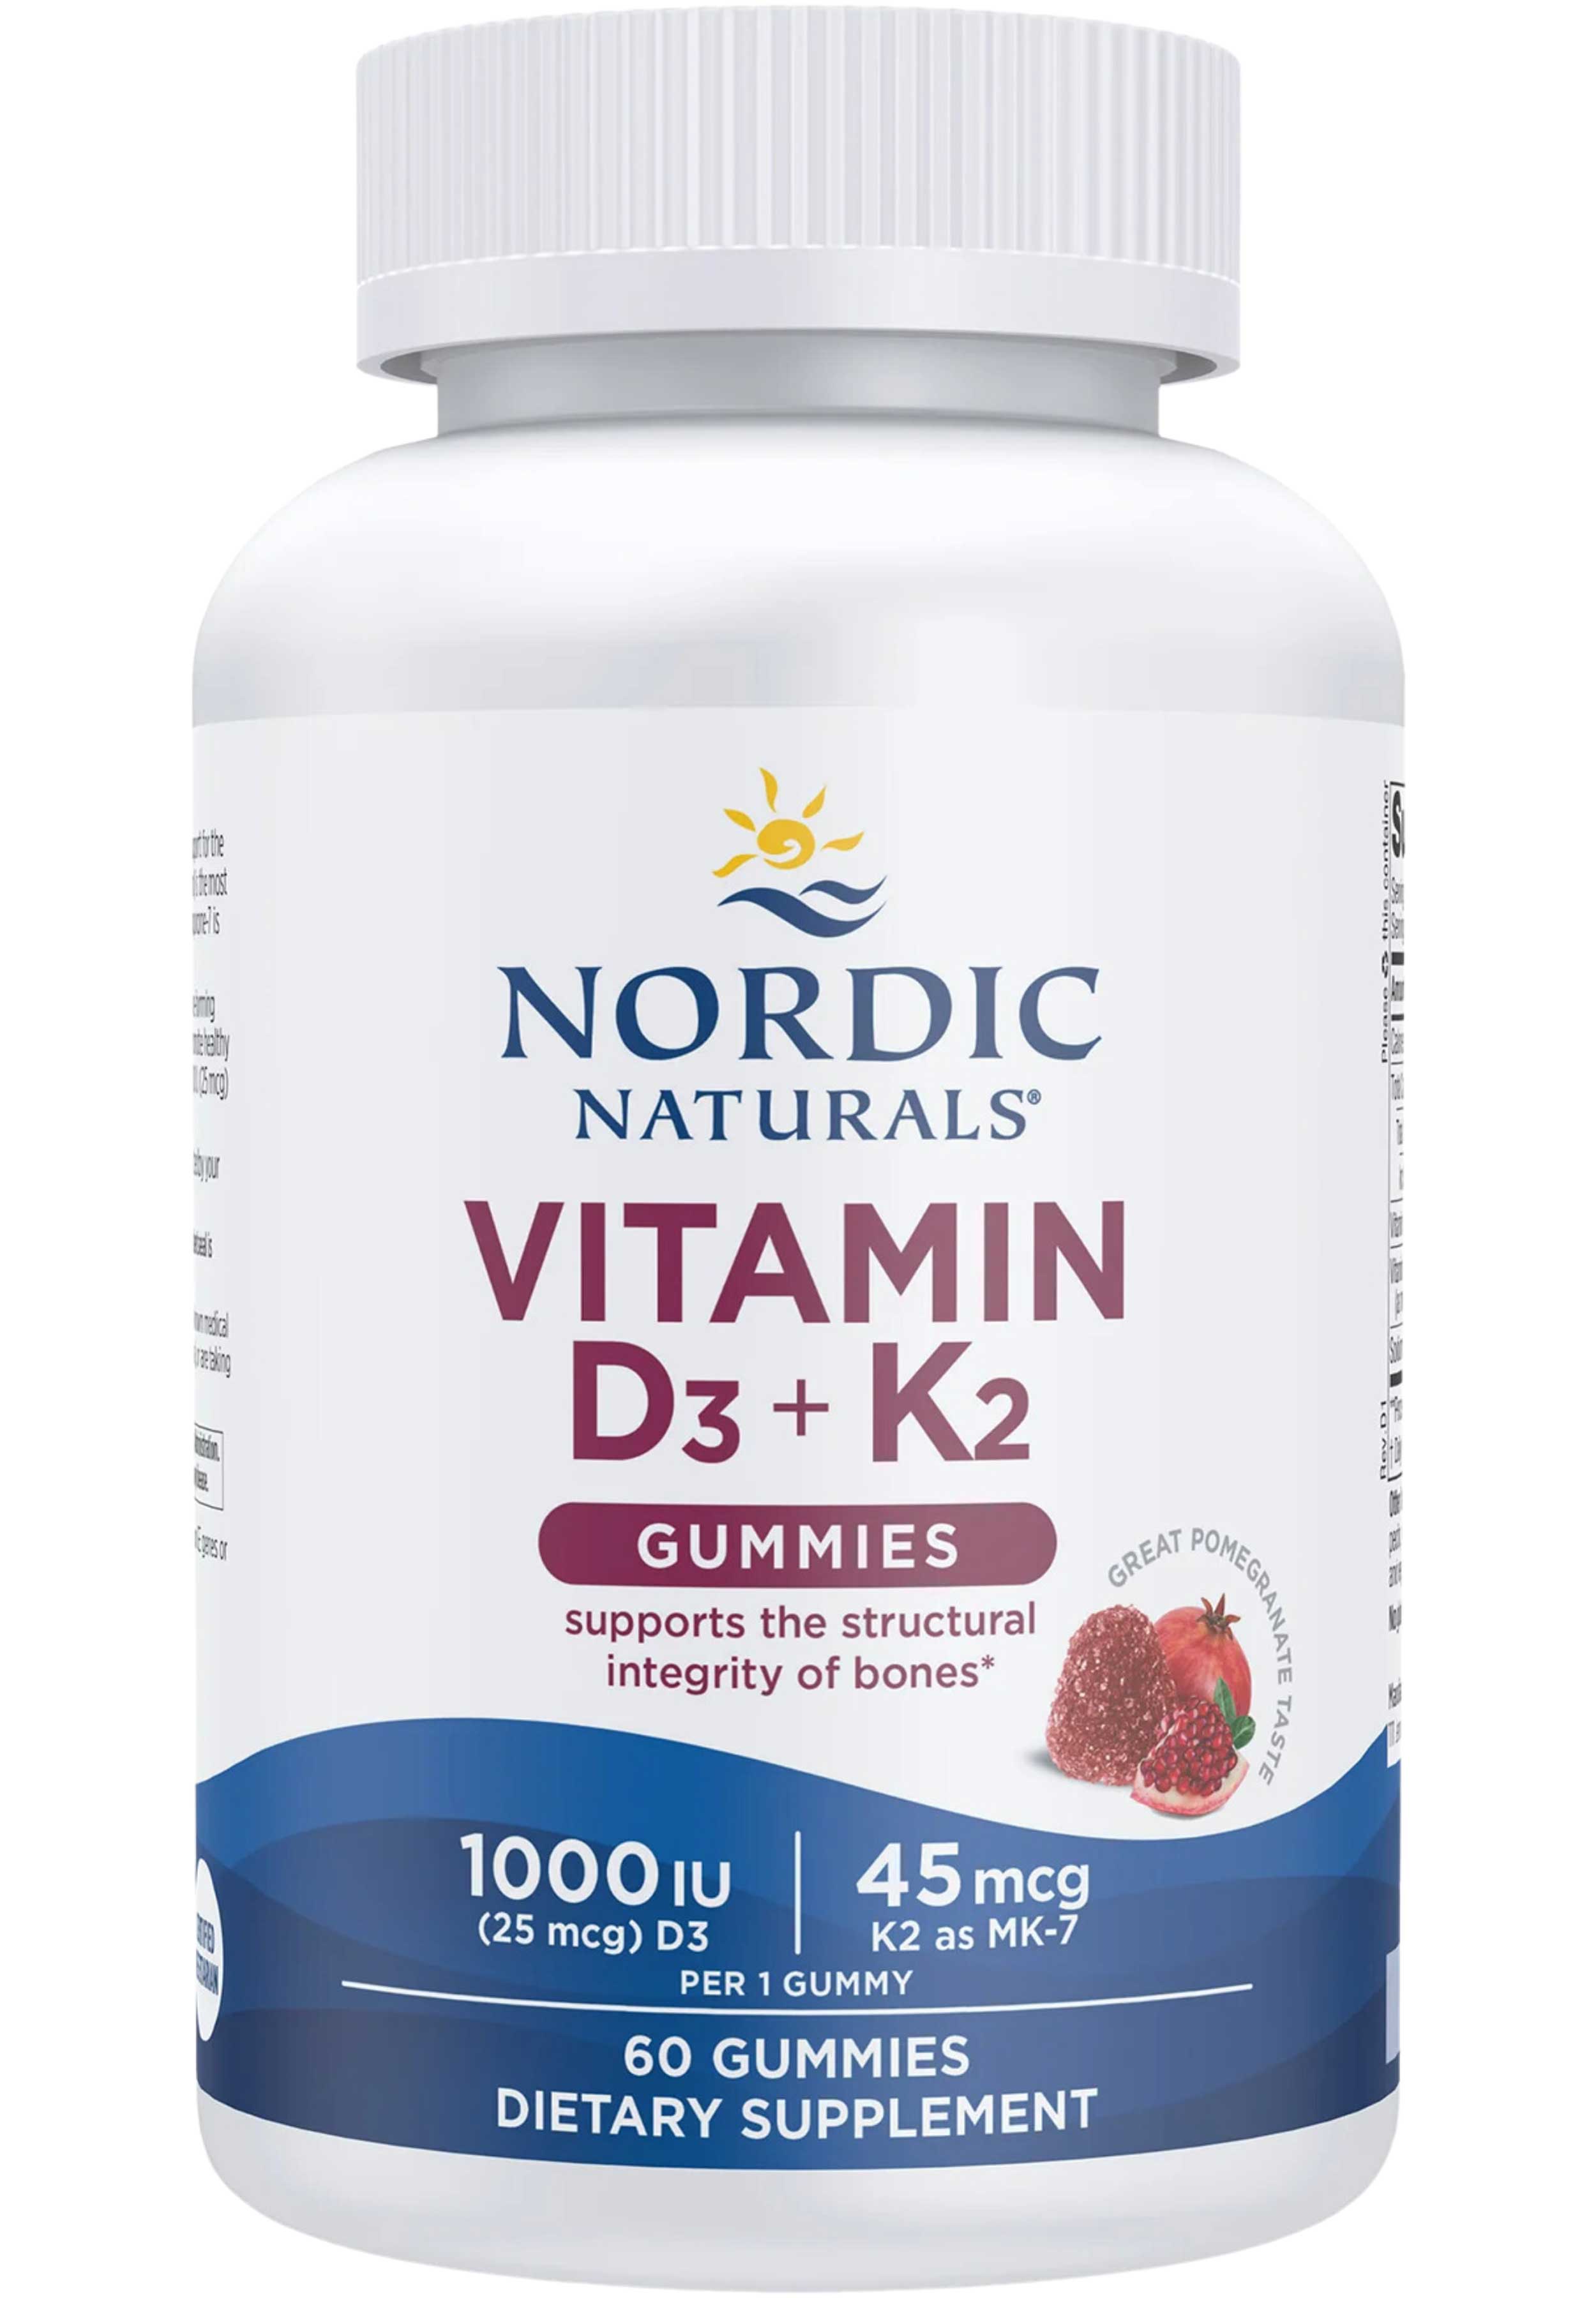 Nordic Naturals Vitamin D3 + K2 Gummies